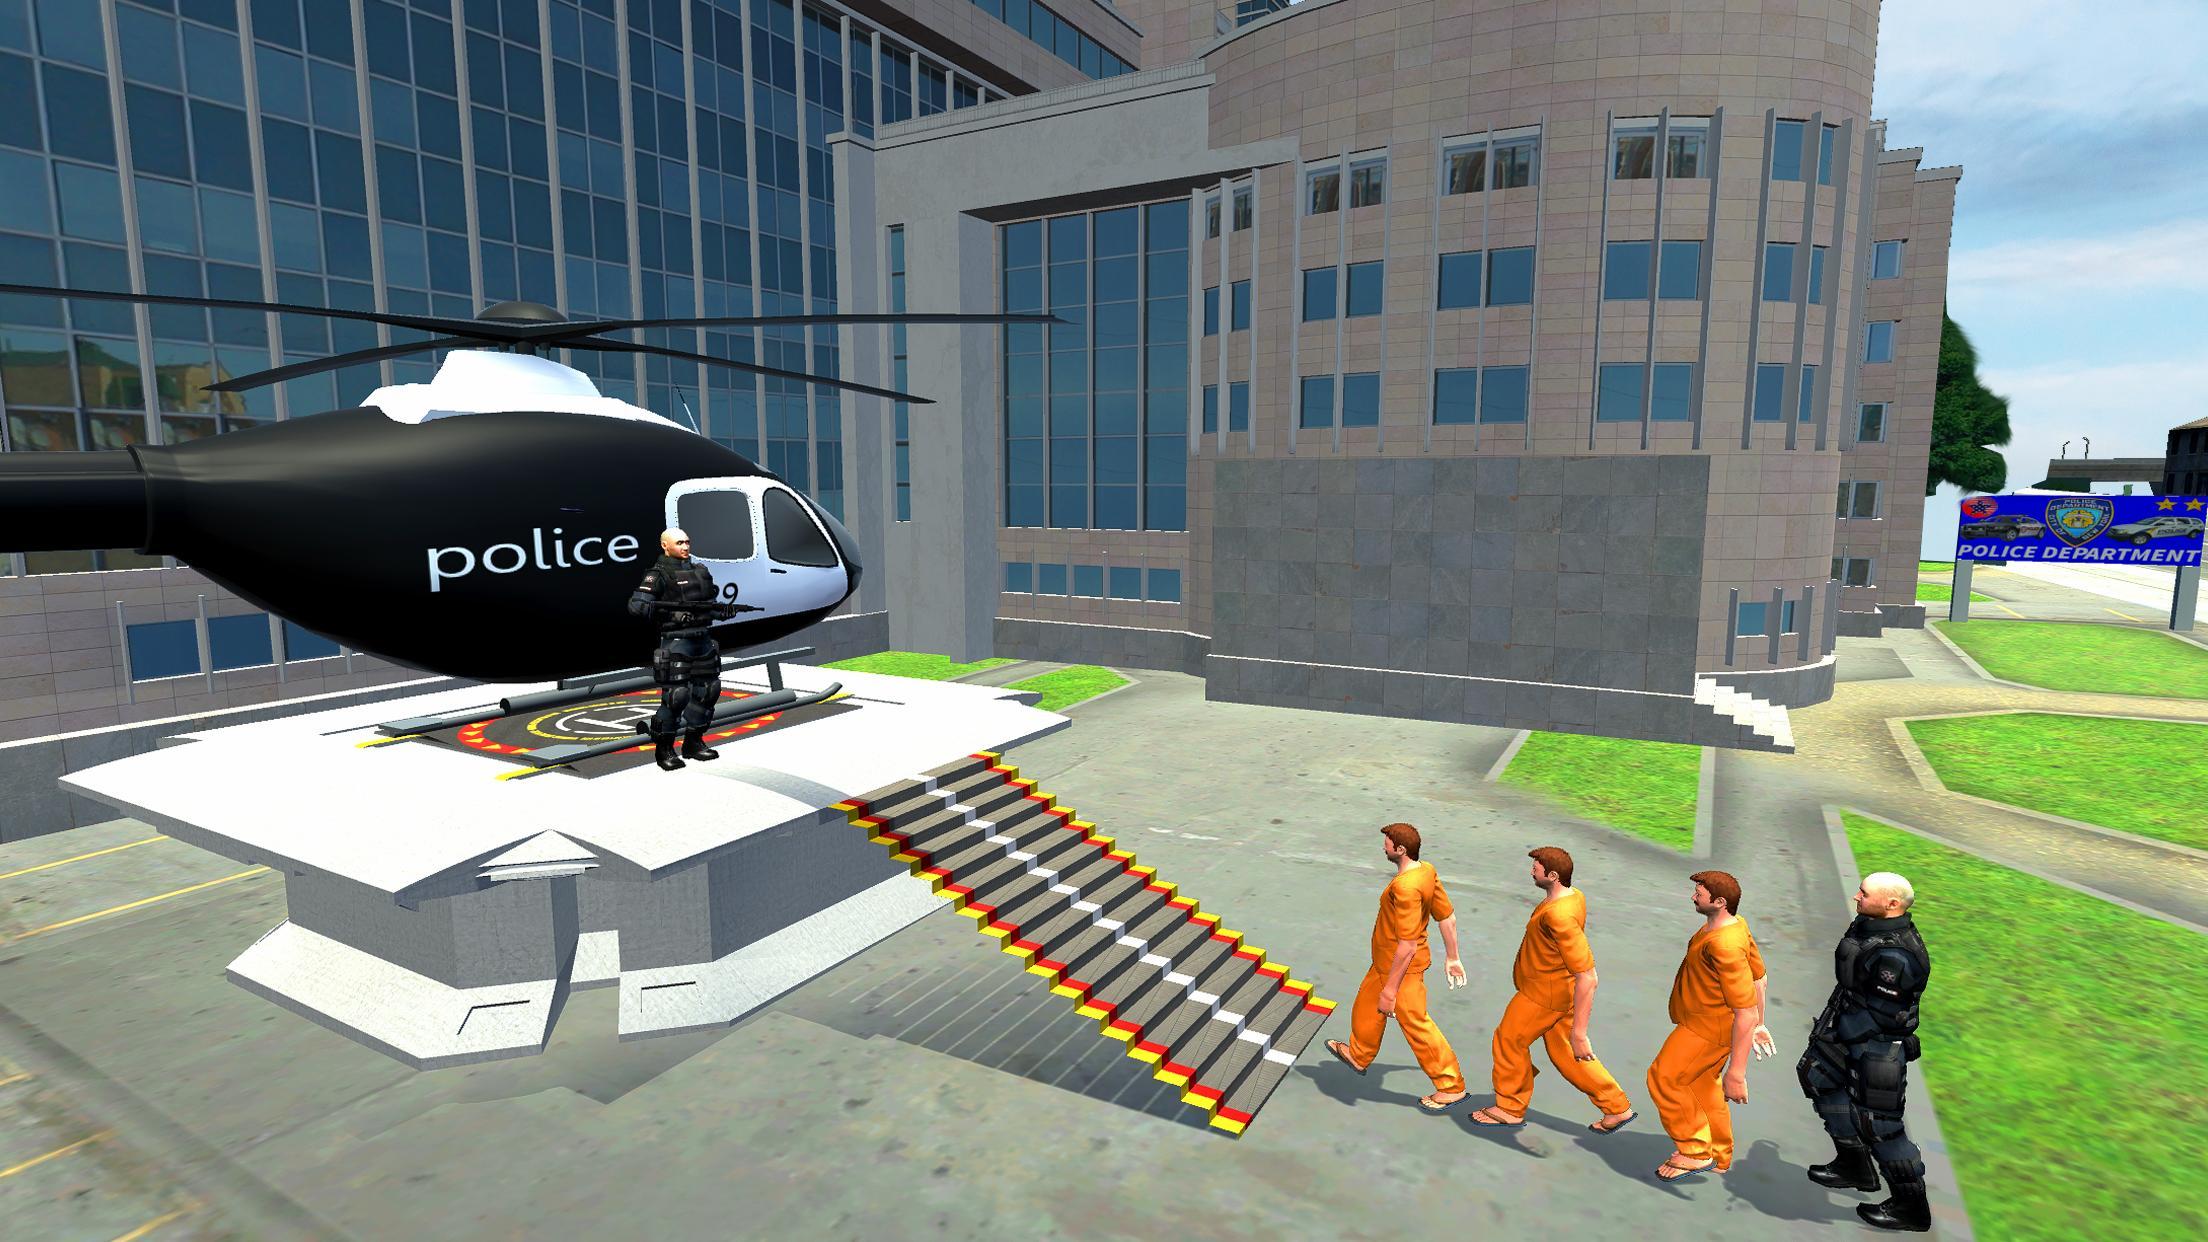 Police Heli Prisoner Transport: Flight Simulator for Android - APK Download